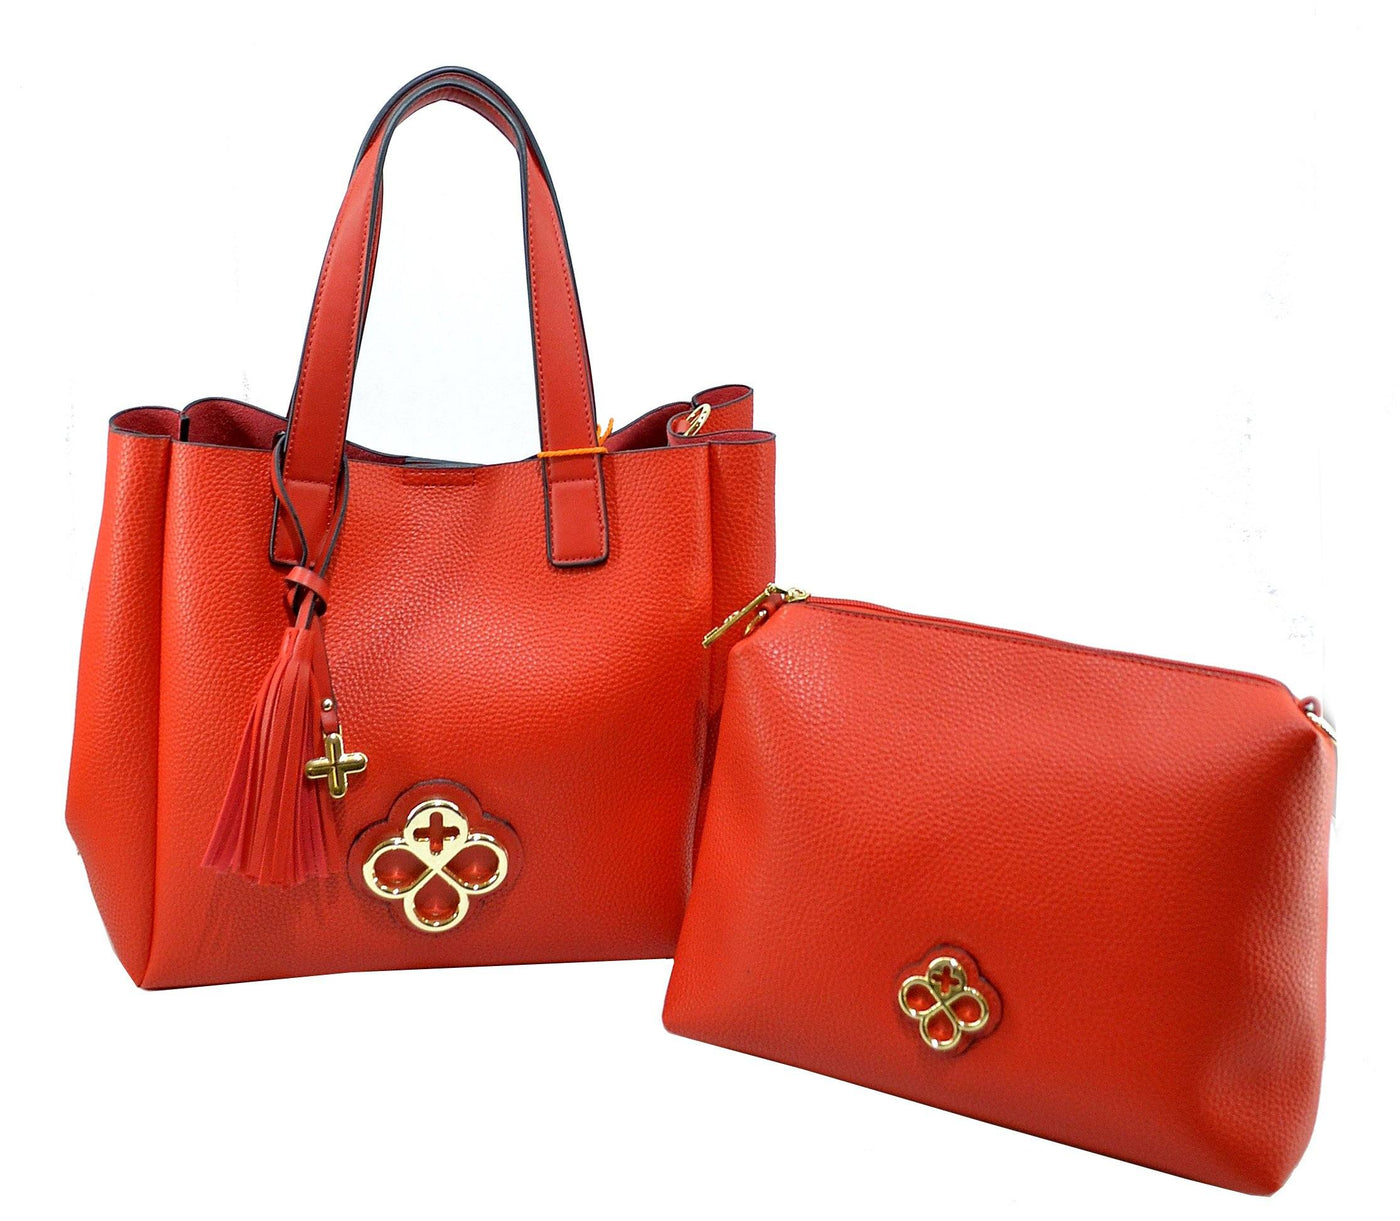 Bolsa 2 1 color rojo / Jaime Ibiza – Moda Elisa - Encuentra bolsas para dama, cosmetiqueras, mochilas, maletas, portafolios y más!